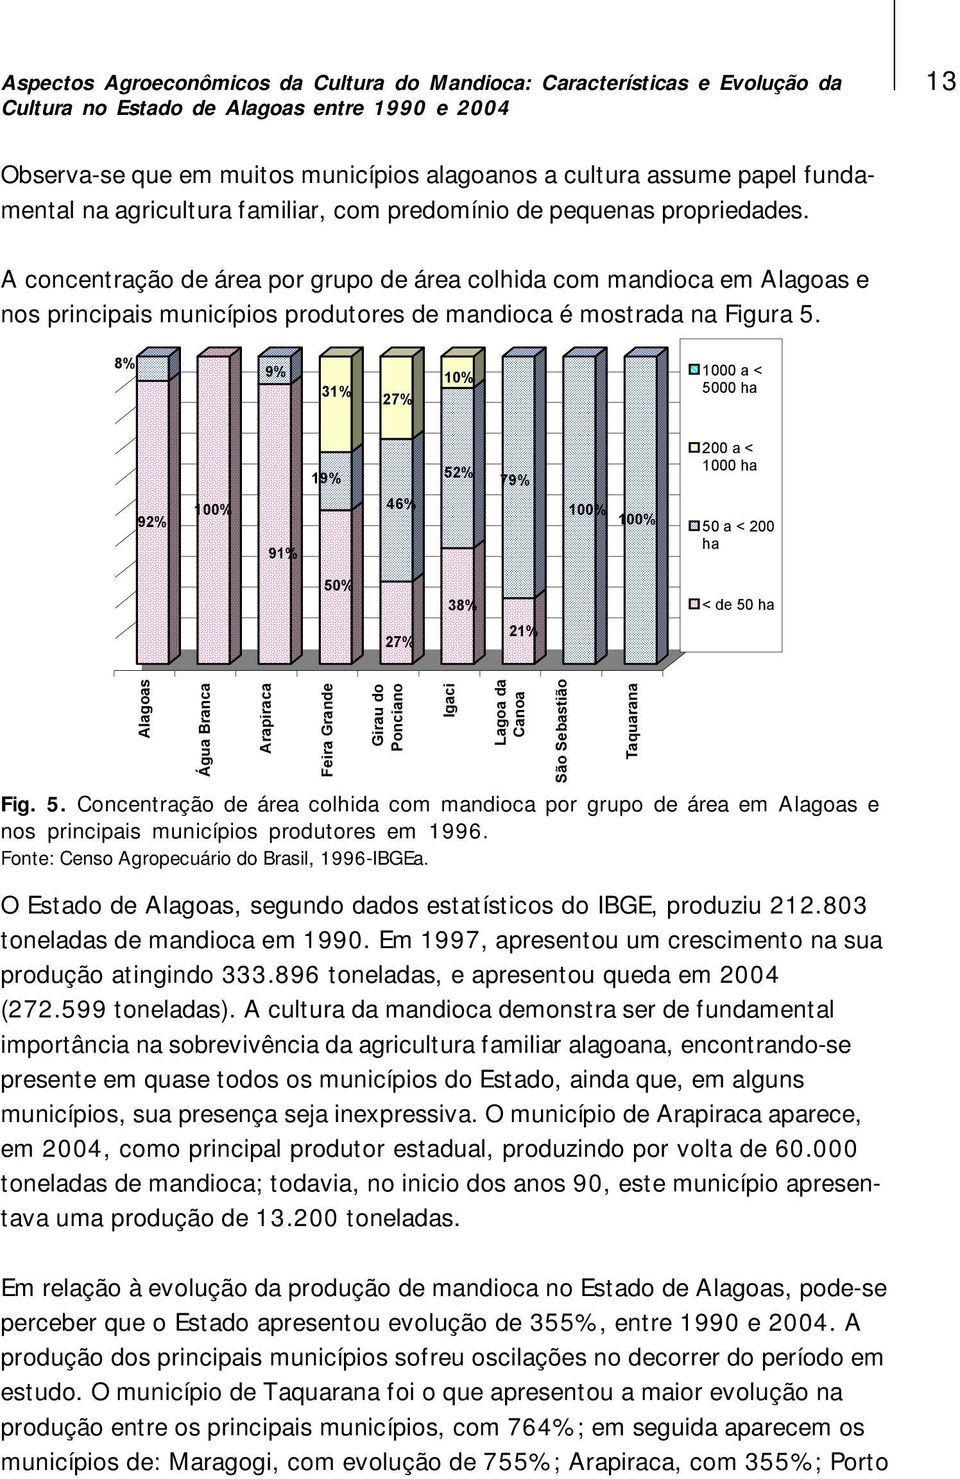 8% 9% 31% 27% % 00 a < 5000 ha 92% 0% 91% 19% 46% 52% 79% 0% 0% 200 a < 00 ha 50 a < 200 ha 50% 27% 38% 21% < de 50 ha Alagoas Água Branca Arapiraca Feira Grande Girau do Ponciano Igaci Fig. 5. Concentração de área colhida com mandioca por grupo de área em Alagoas e nos principais municípios produtores em 1996.